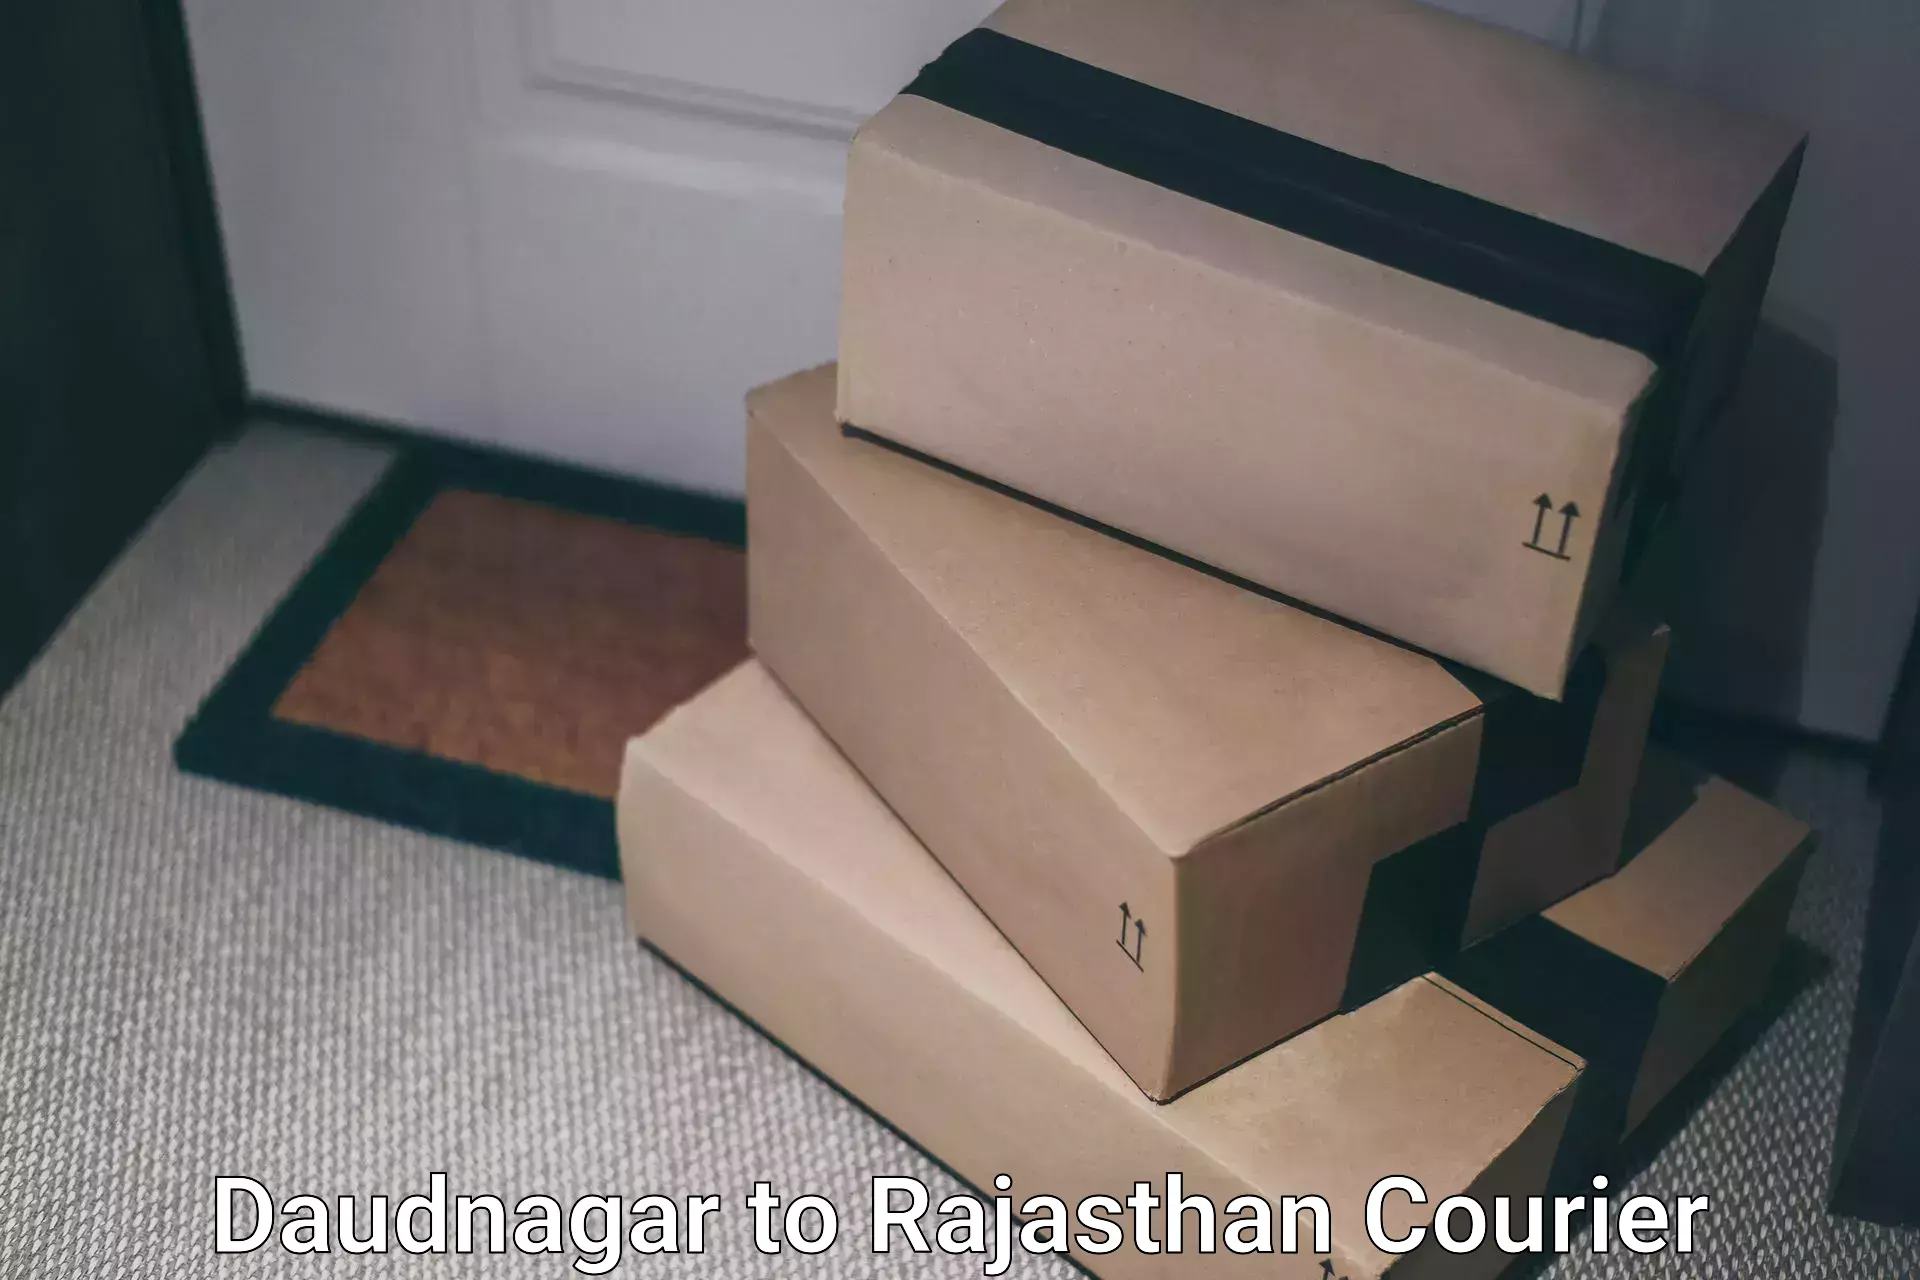 Global shipping solutions Daudnagar to Rajasthan